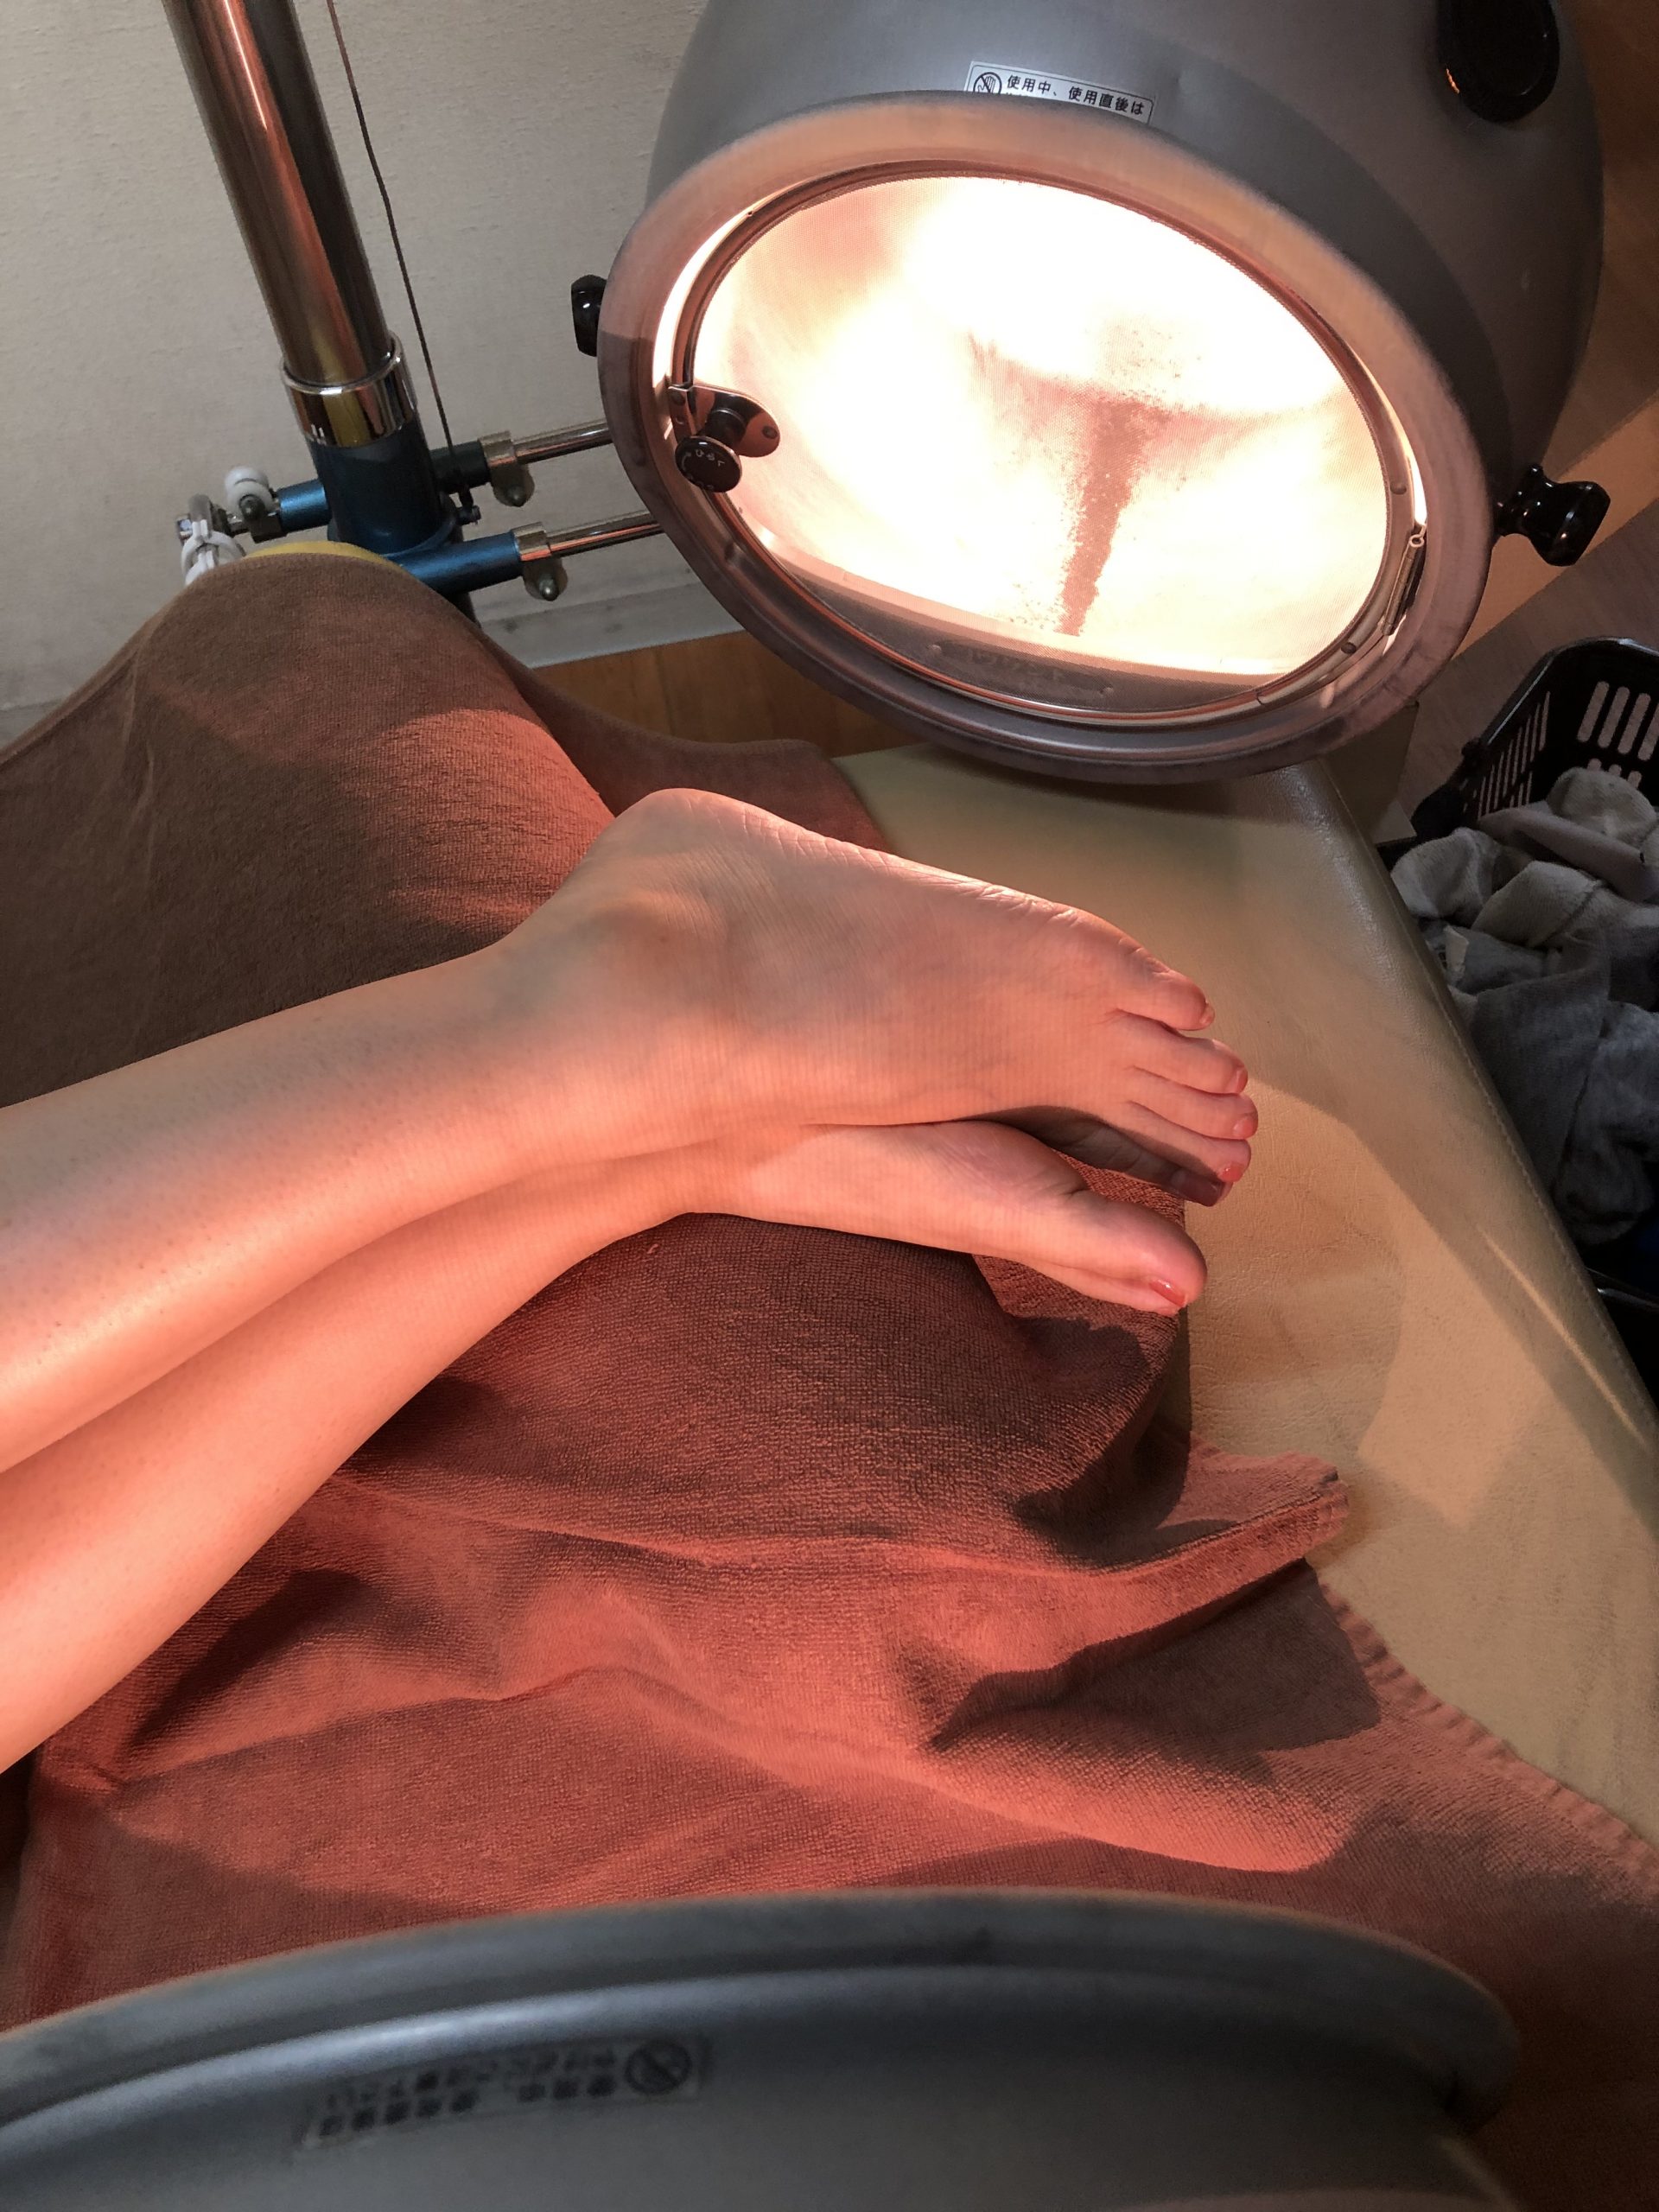 N・Yさん73歳女性、冷え症と35℃台の低体温改善のコウケントー光線療法